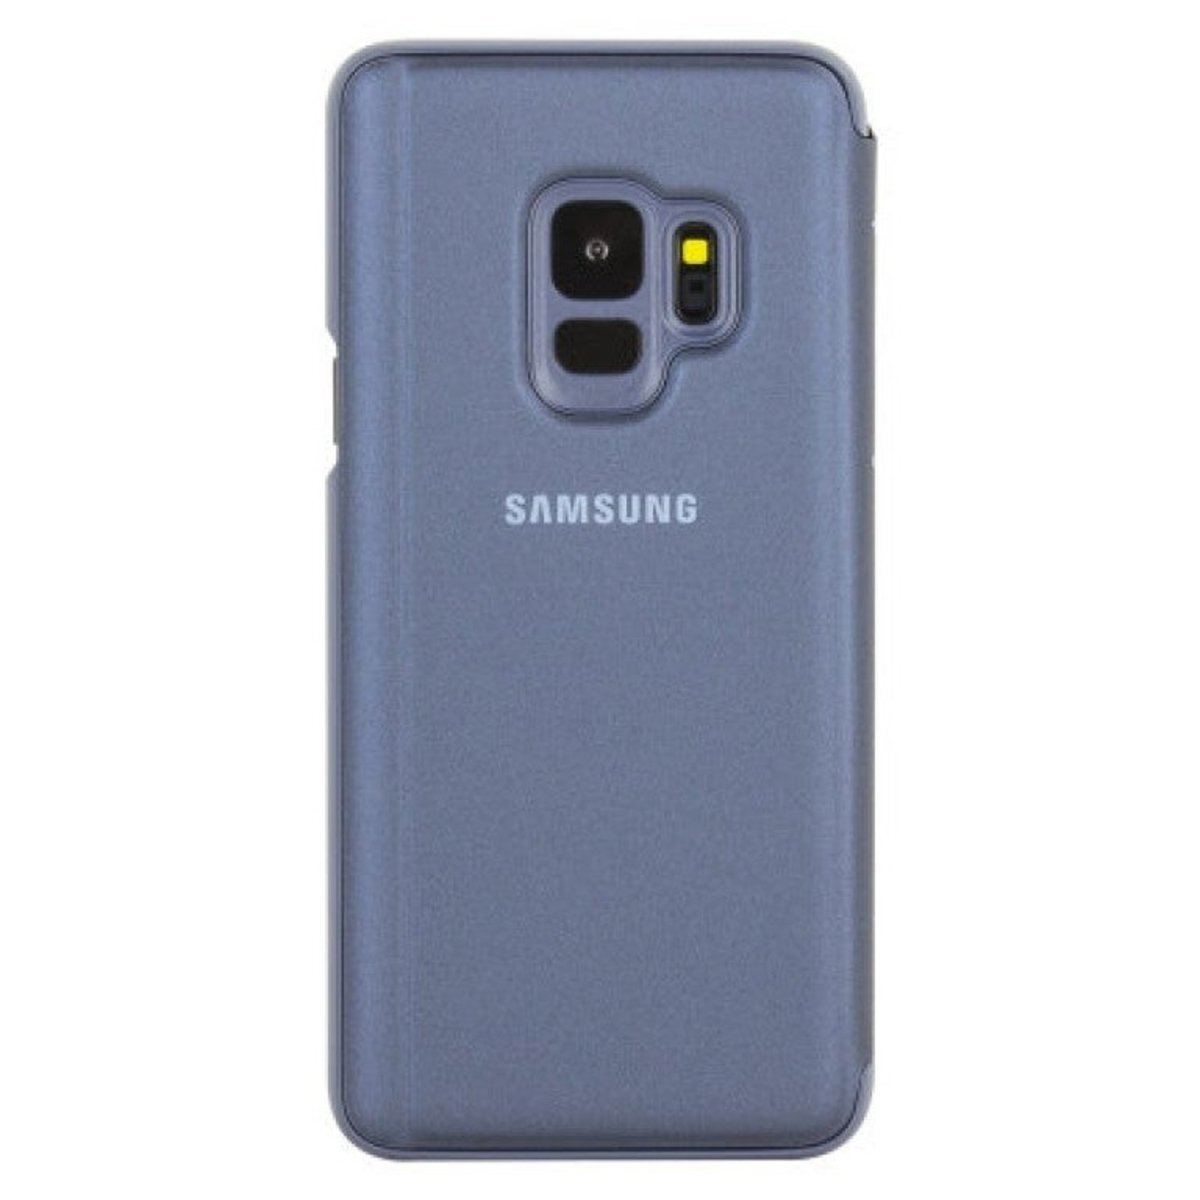 Las fundas oficiales para los Samsung Galaxy S9 y S9+ ya están a la venta